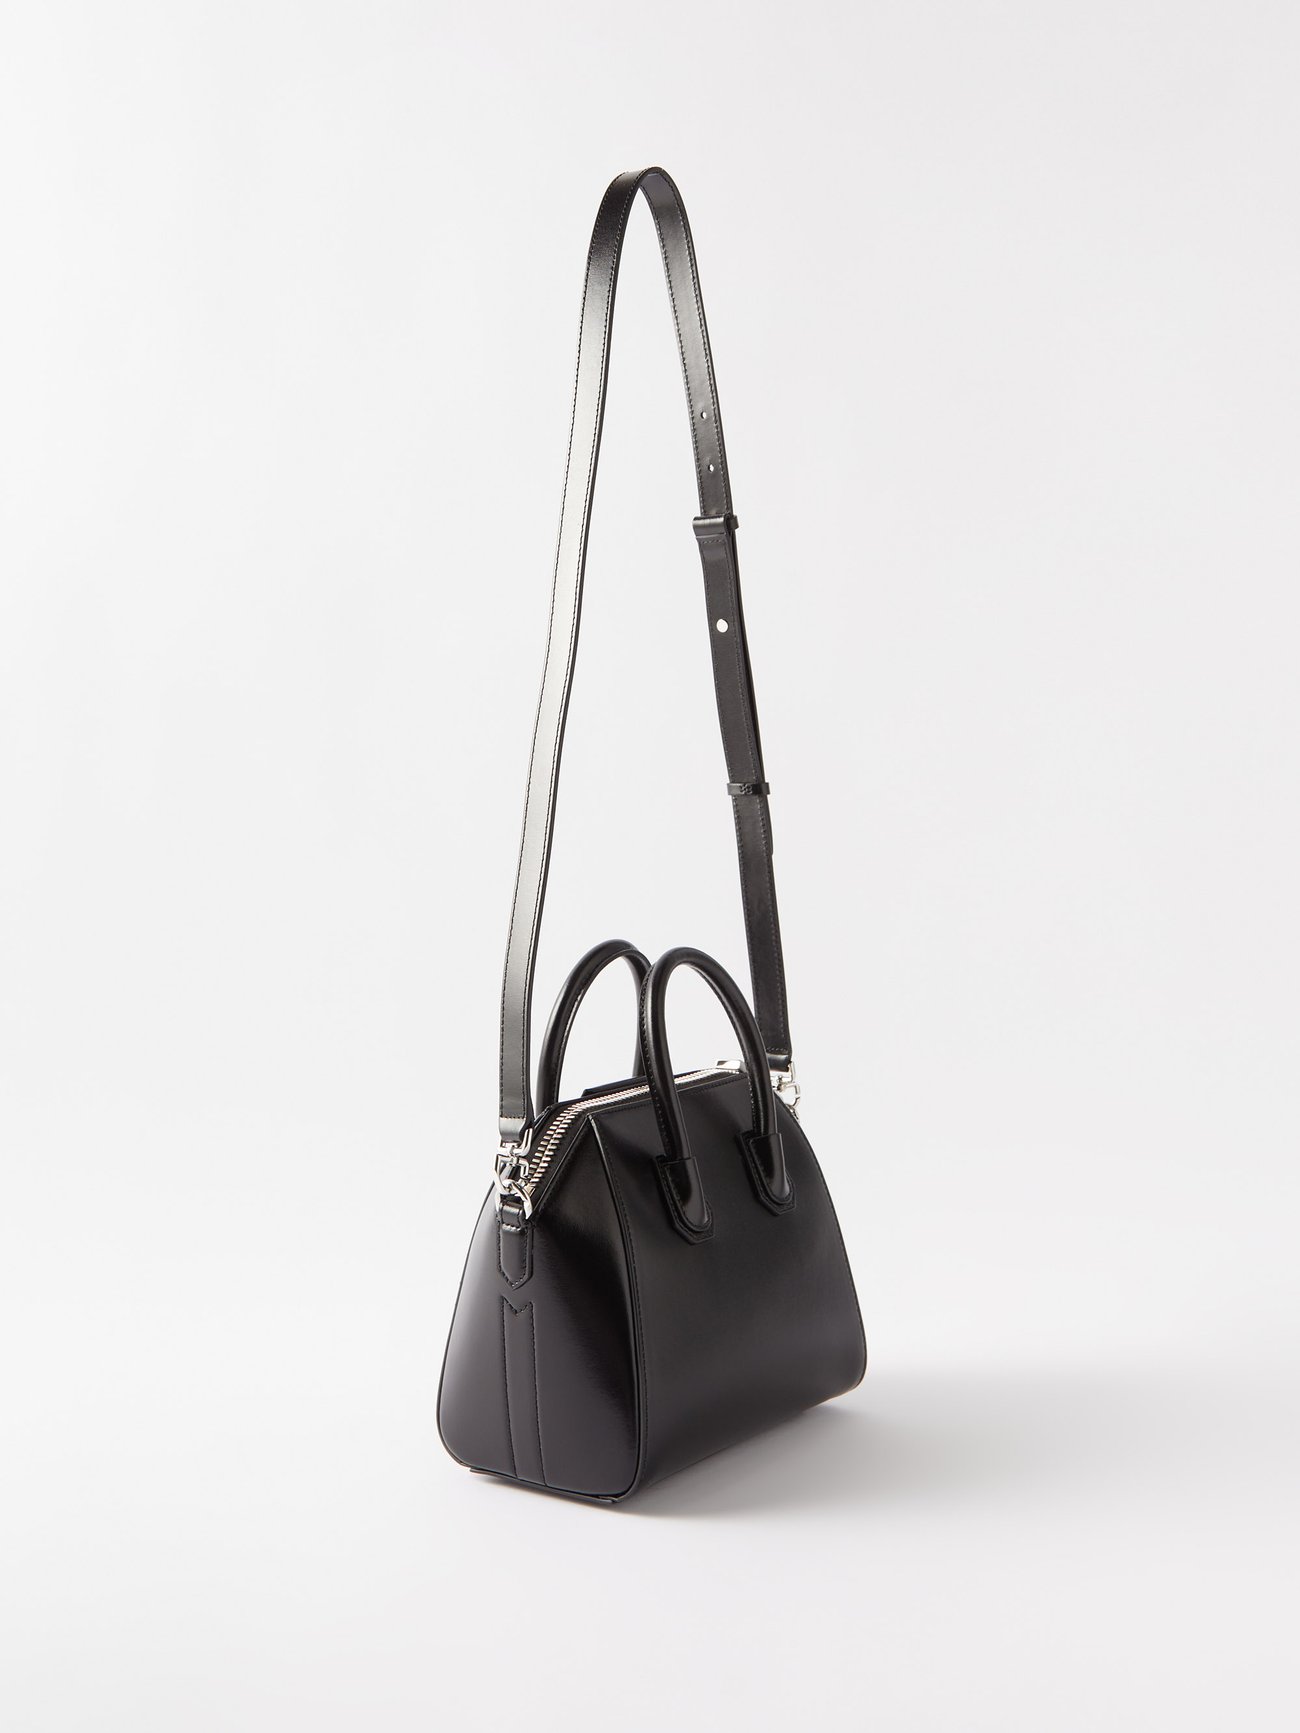 Antigona Mini Leather Tote in Black - Givenchy